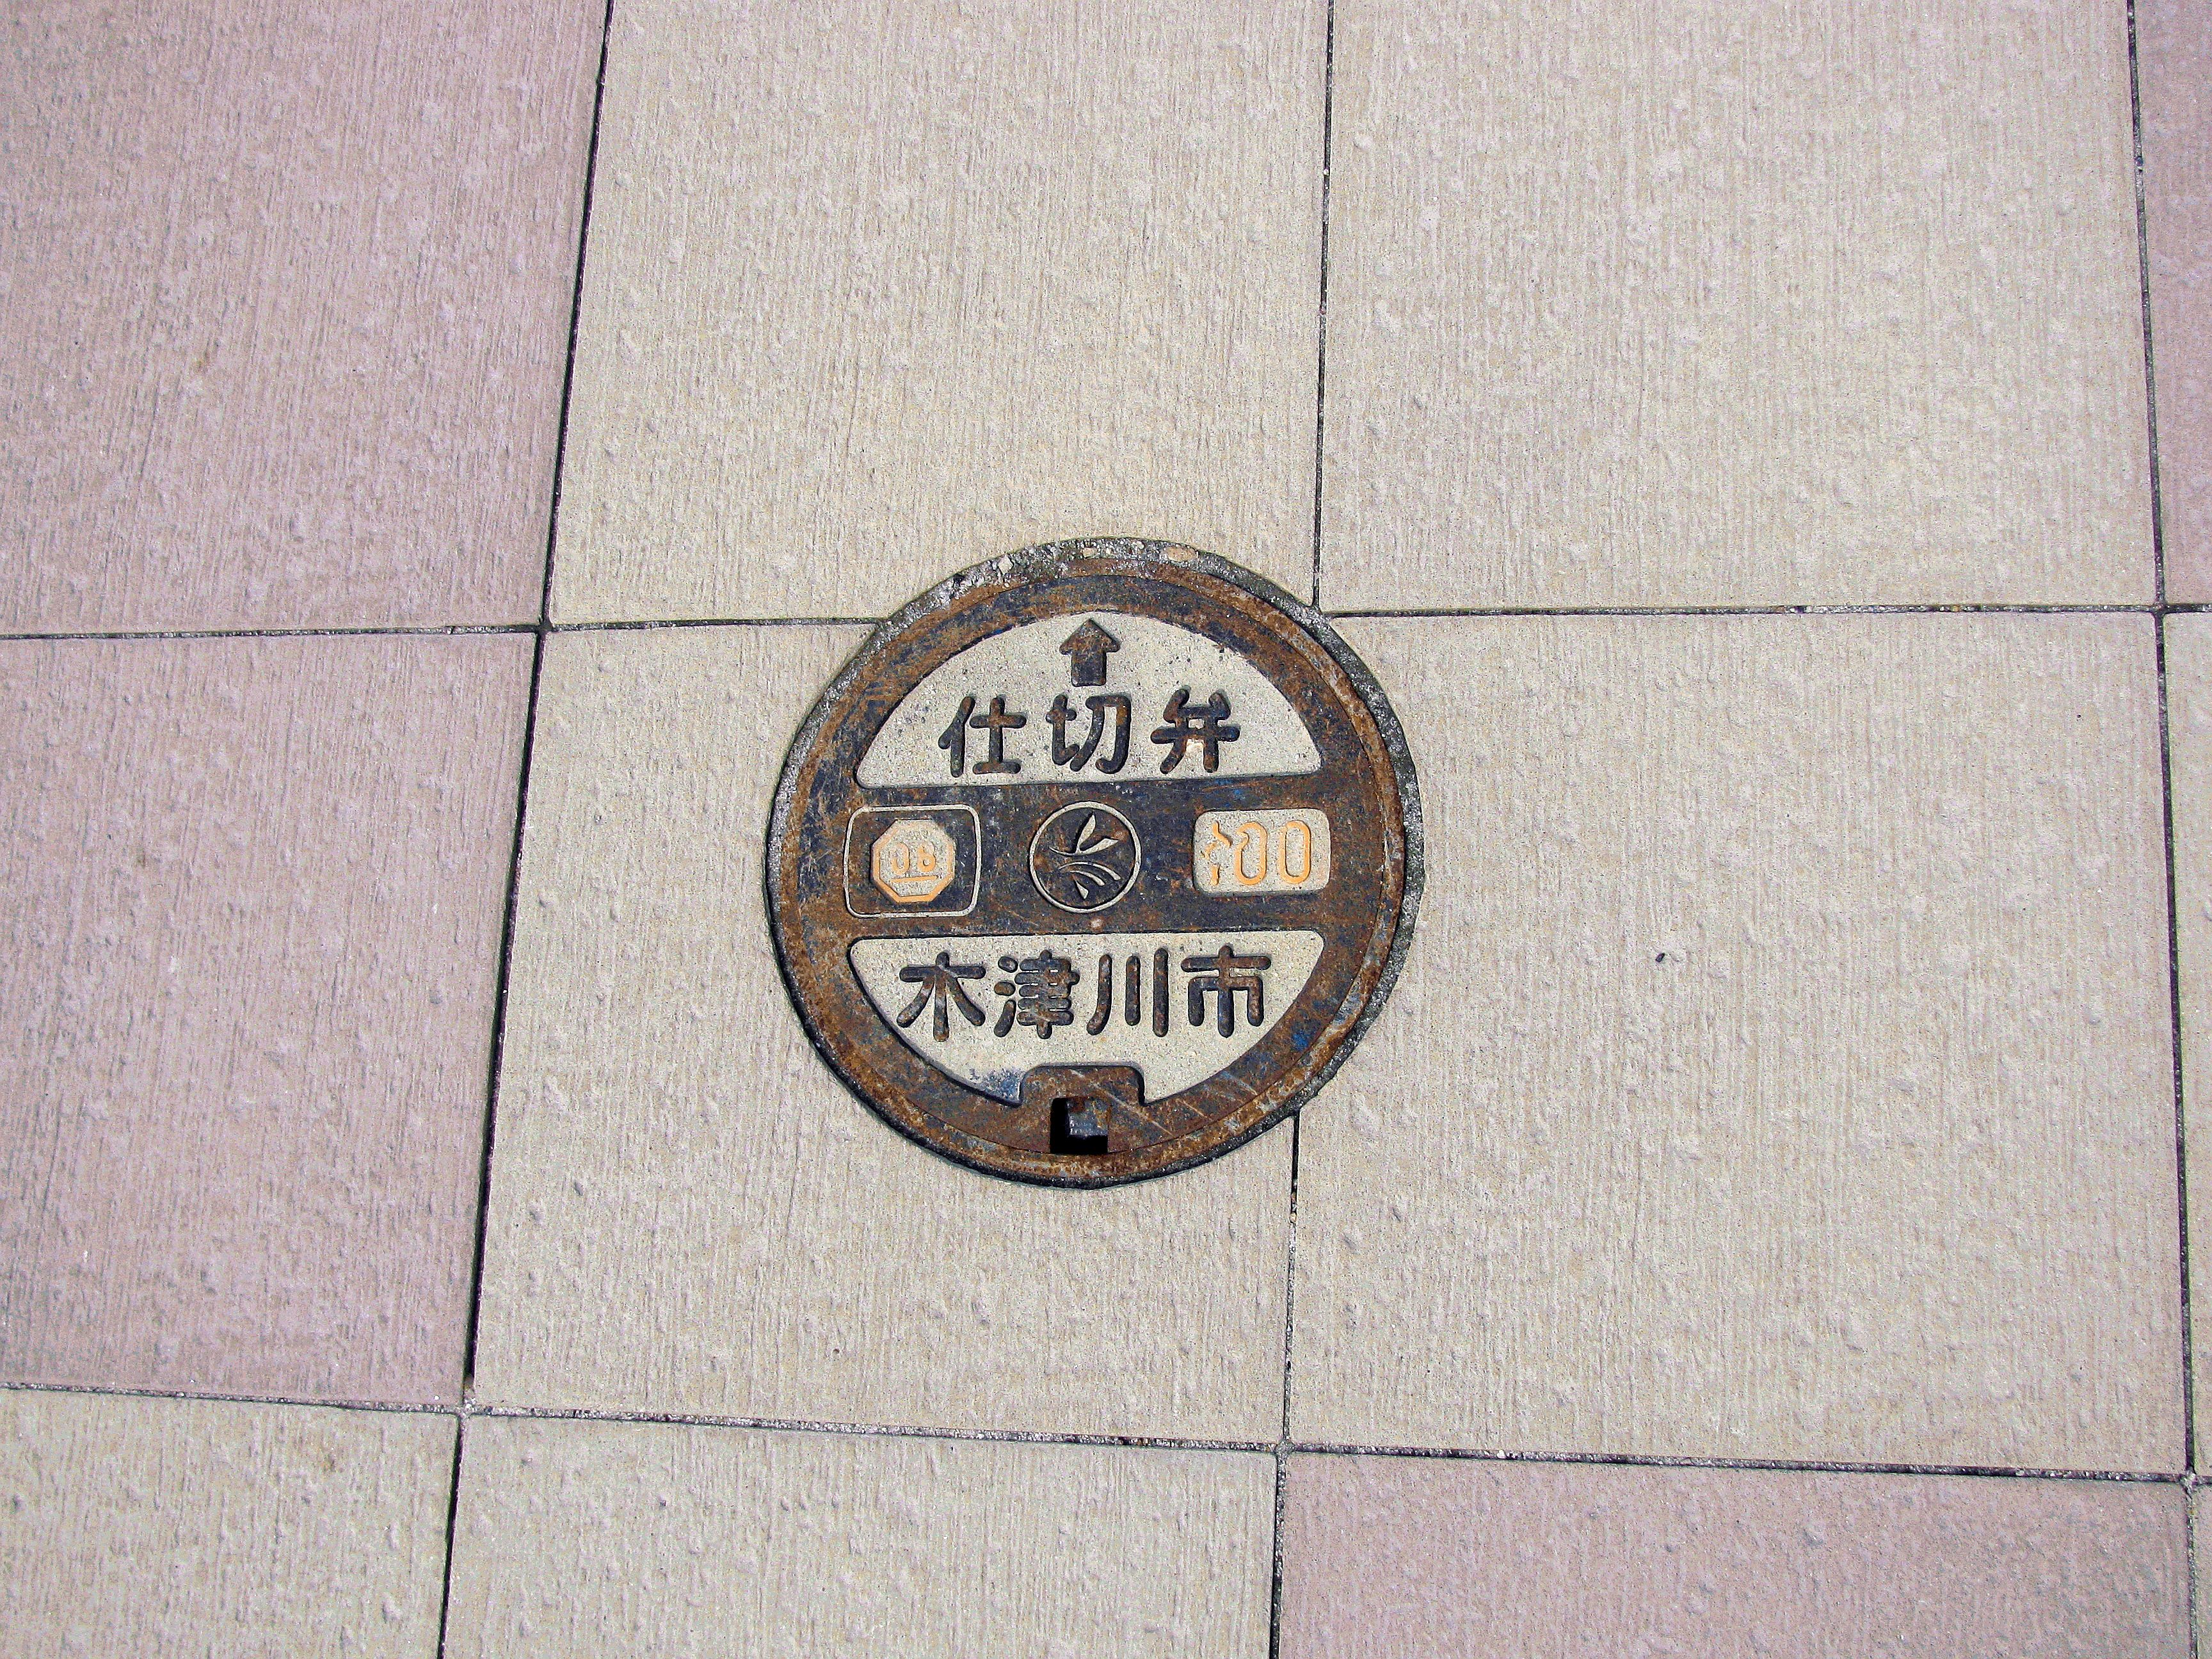 Manhole in Kidu